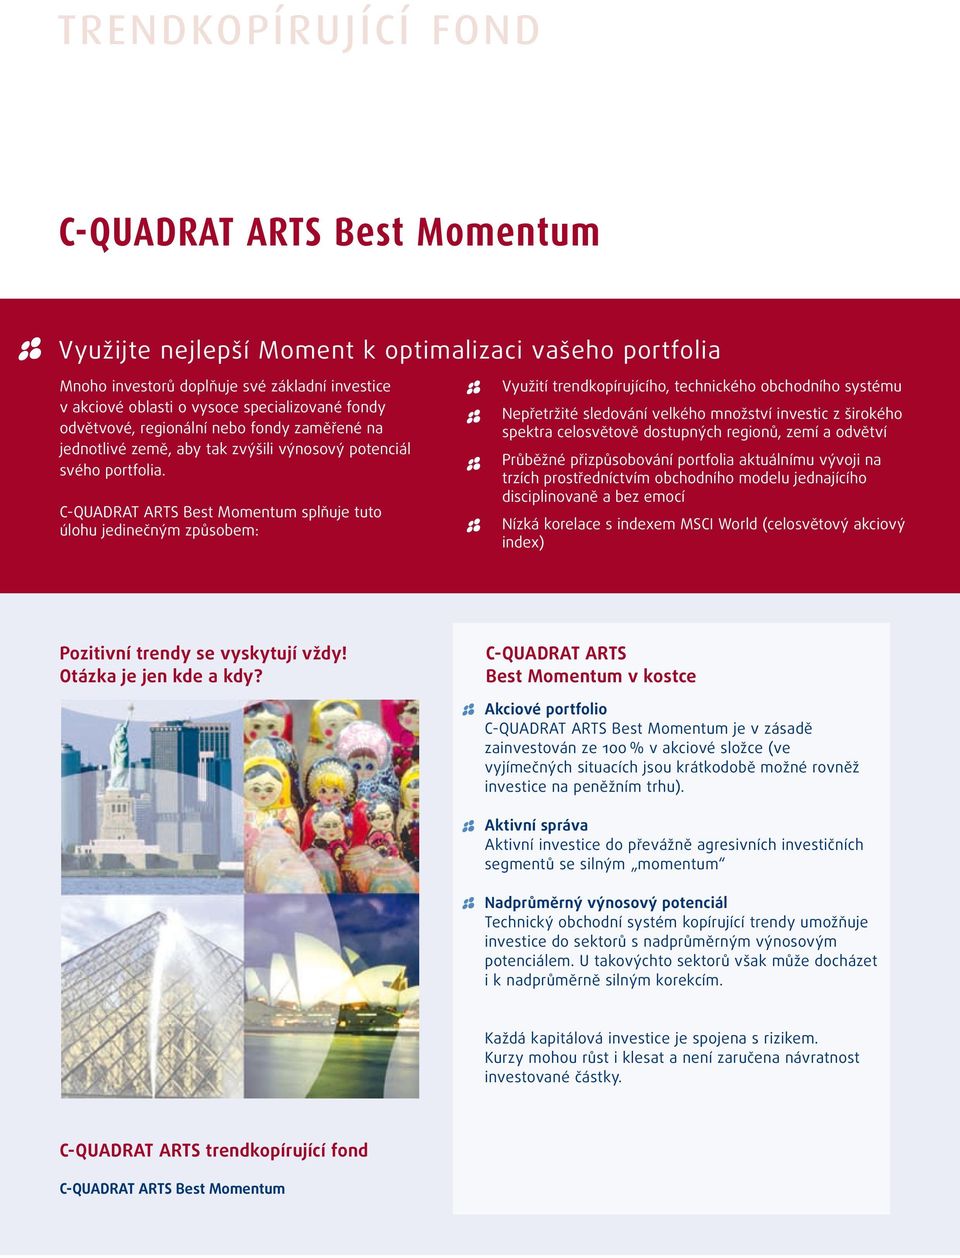 C-QUADRAT ARTS Best Momentum splňuje tuto úlohu jedinečným způsobem: Využití trendkopírujícího, technického obchodního systému Nepřetržité sledování velkého množství investic z širokého spektra